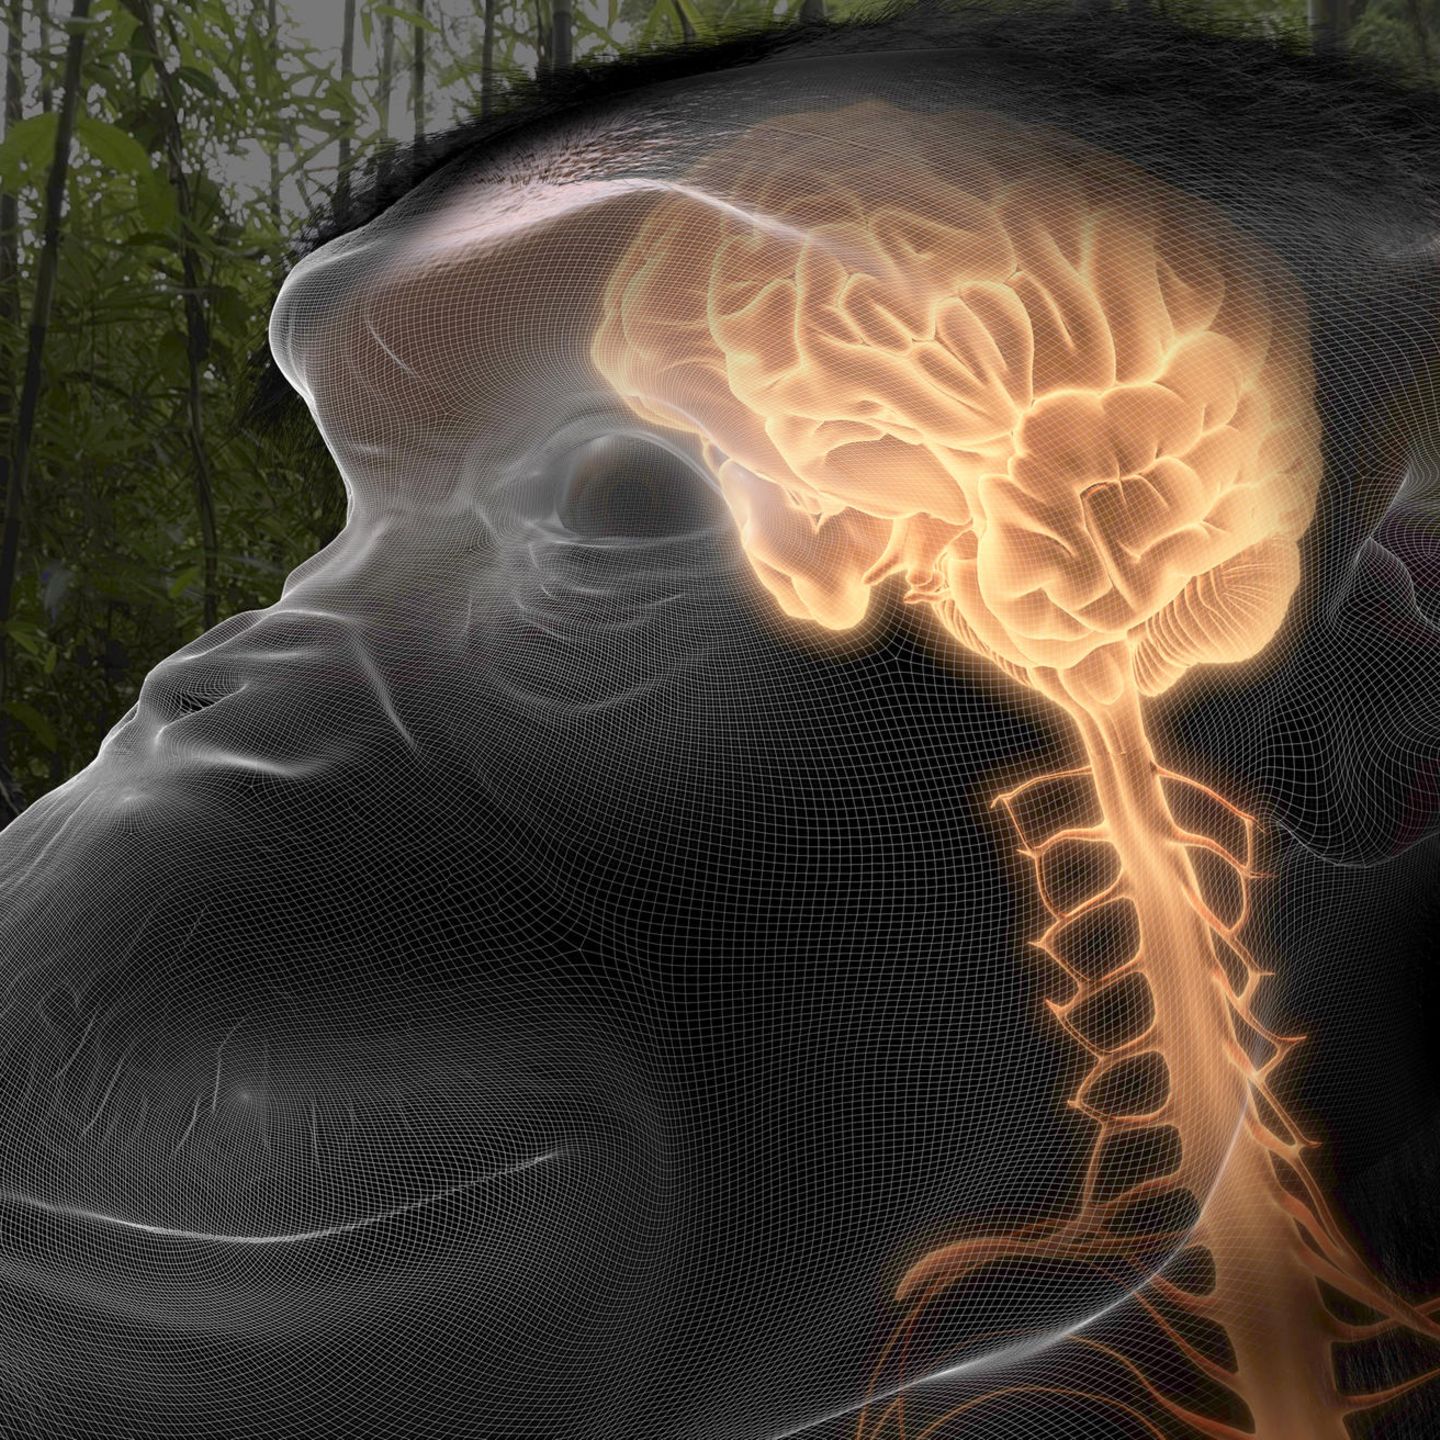 Vor 27 Millionen Jahren: Wie der Mensch haben auch Schimpansen eine gefurchte Hirnrinde. In der millimeterdünnen Außenschicht des Denkorgans werden Sinneseindrücke zu einem Gesamtbild der Welt zusammengefügt – und Bewusstsein entsteht. Nervensystem und Gehirn sind als leuchtend gelbe Strukturen dargestellt